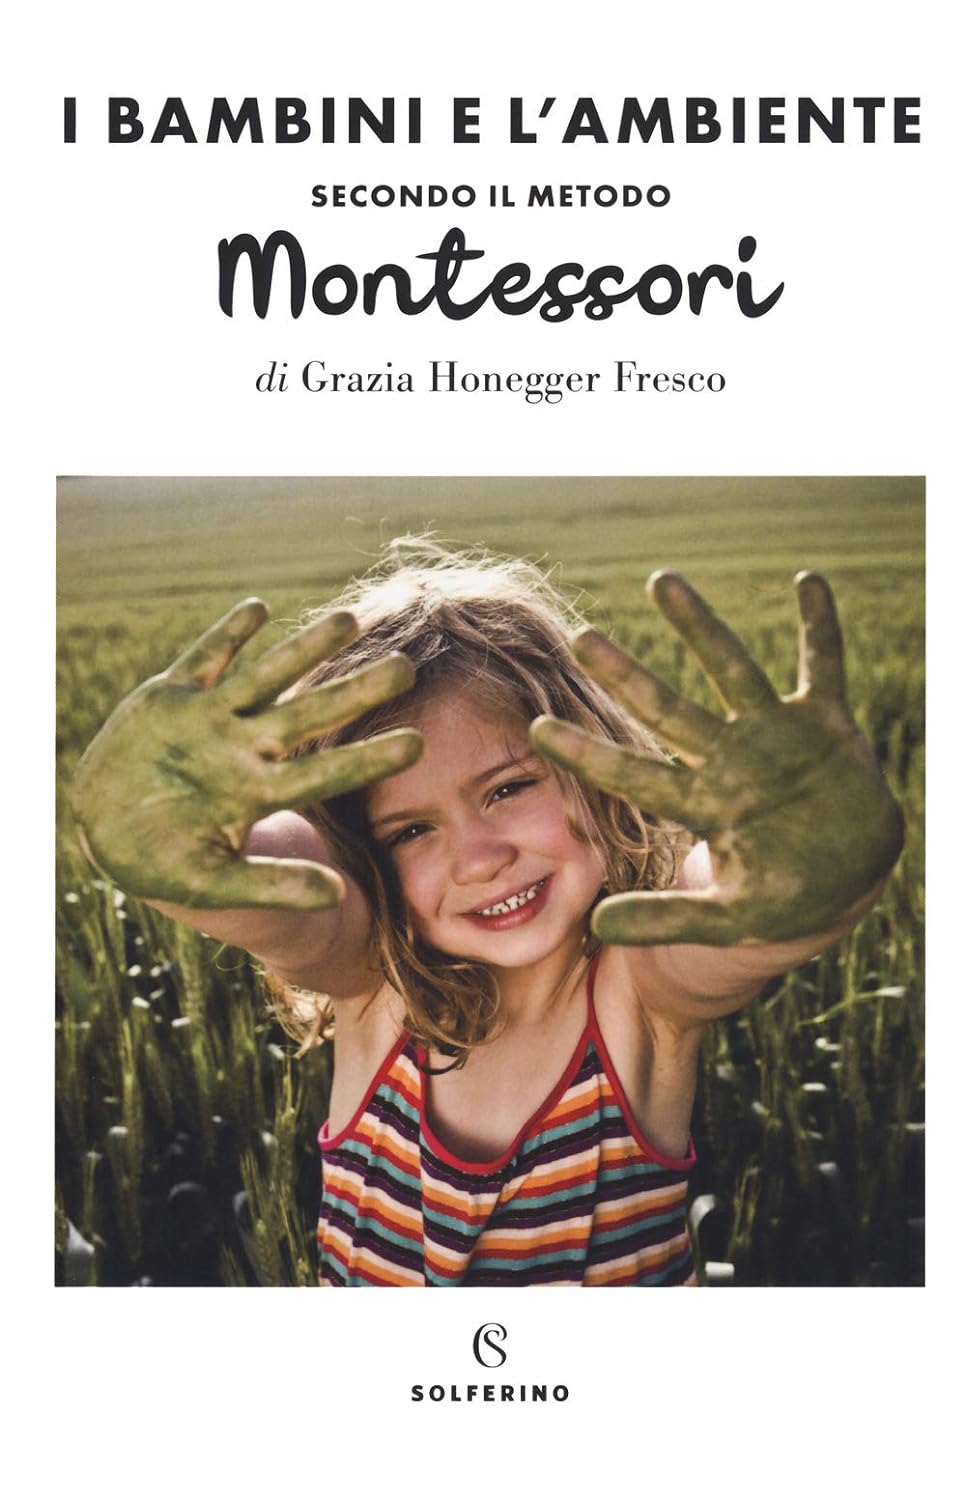 I bambini e l'ambiente secondo il metodo Montessori – Centroscuola